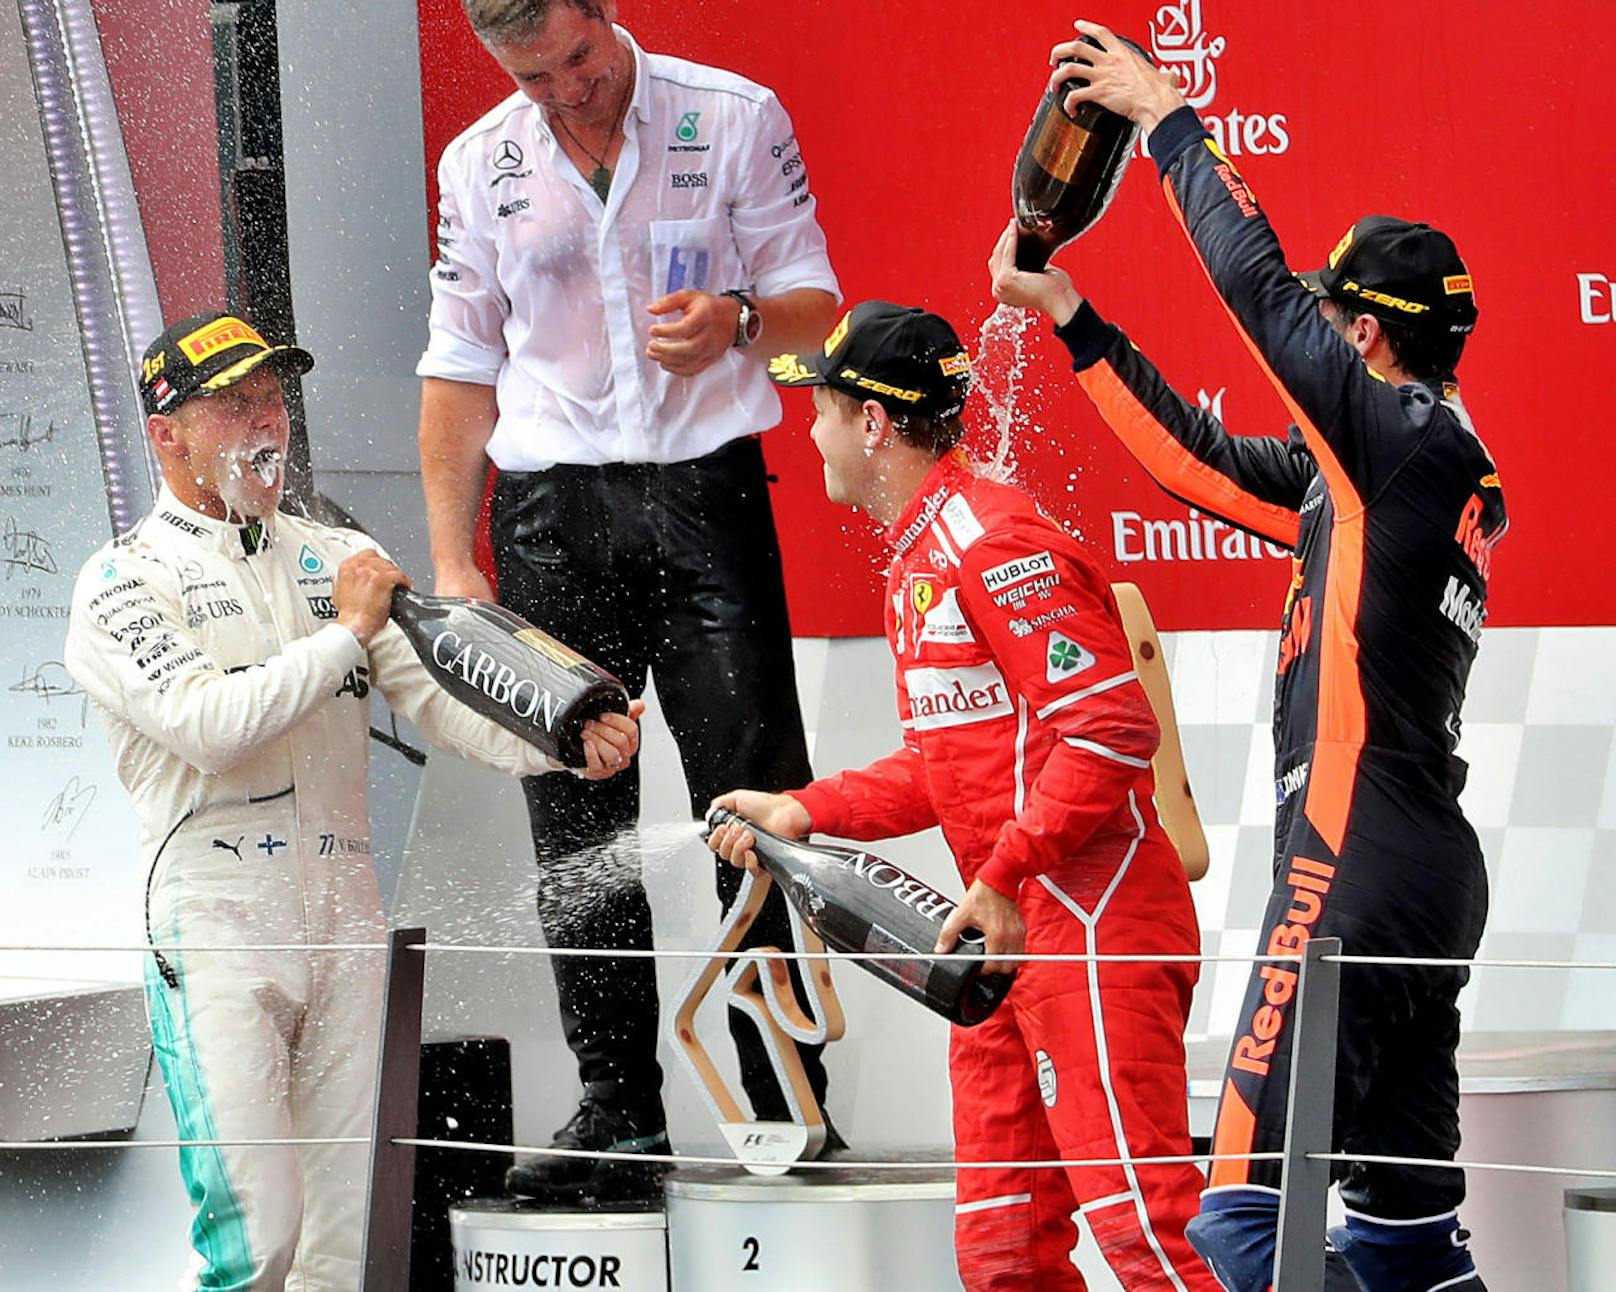 ...und so genoss Bottas einen kräftigen Schluck aus seiner Flasche Siegersekt neben Vettel und Ricciardo. Für Hamilton, der jetzt in der WM-Wertung 20 Punkte hinter Leader Vettel liegt, war auf dem Podium kein Platz mehr.